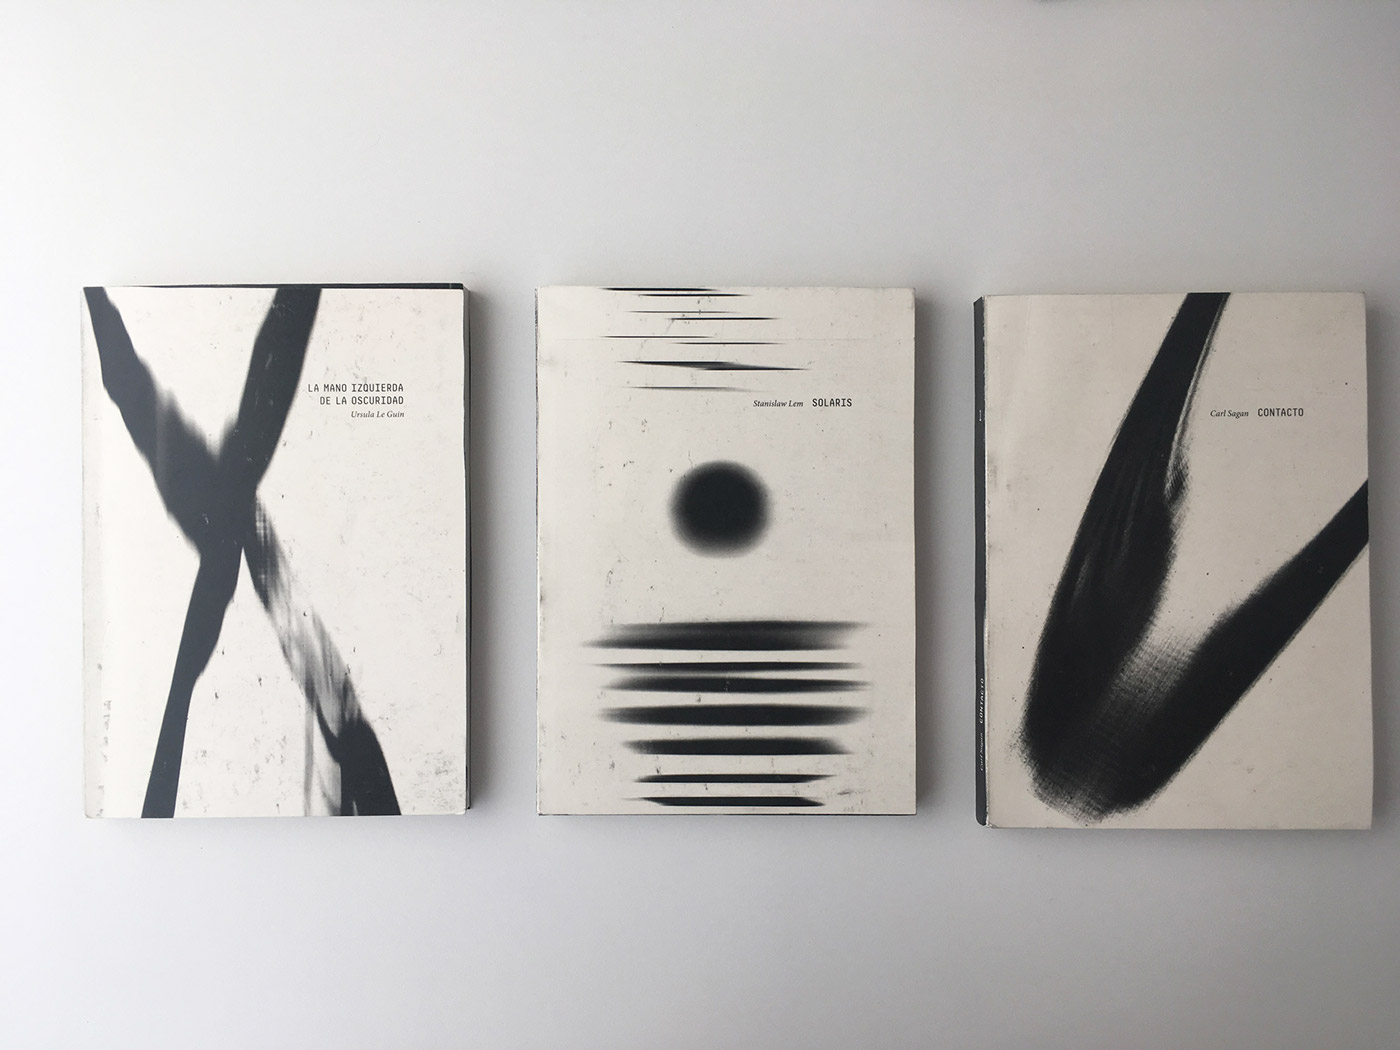 editorial colección books manela black and white ciencia fadu tipografia cover galaxy